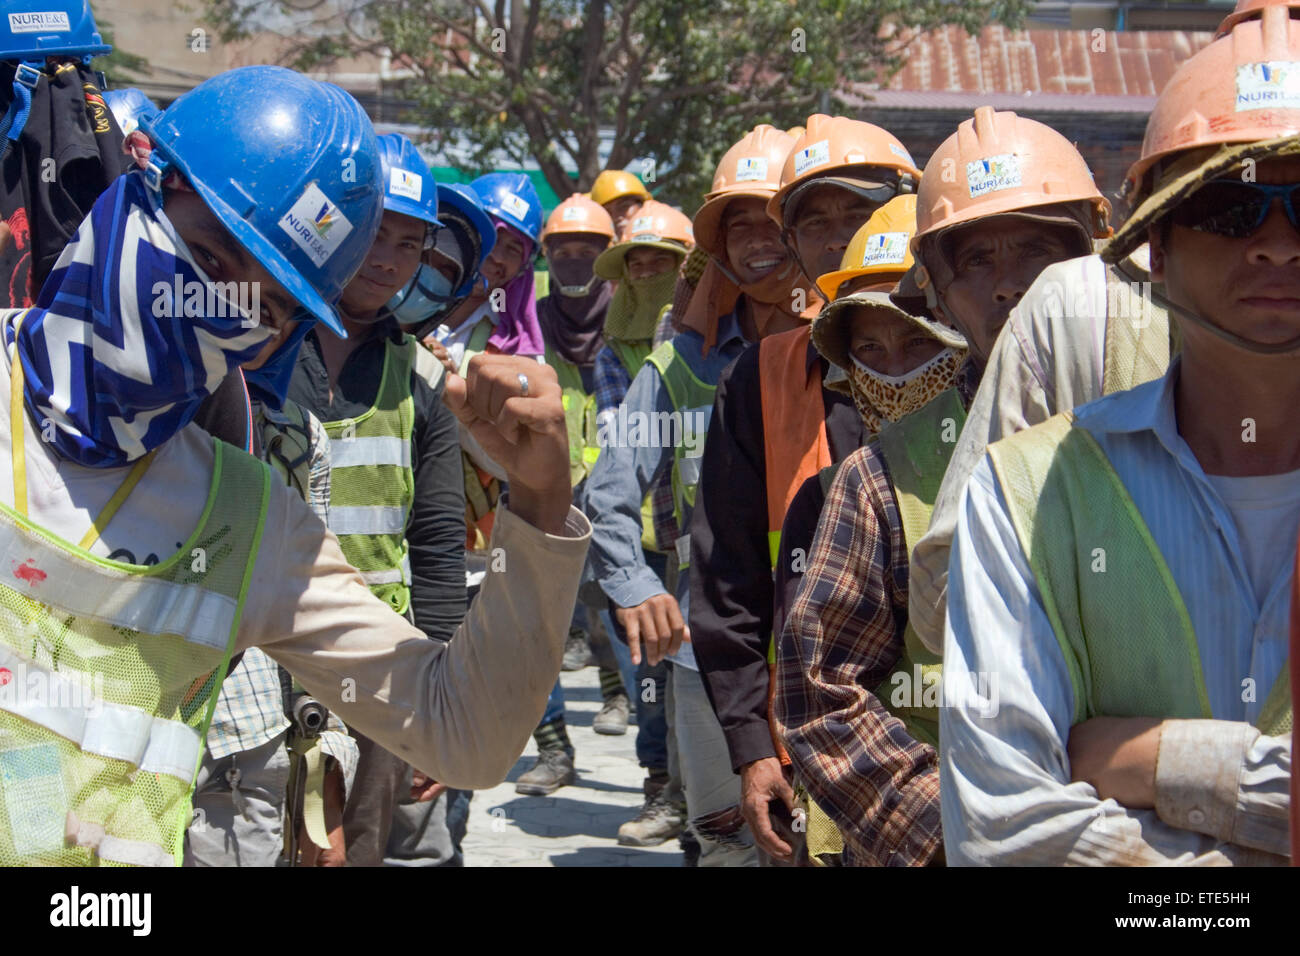 Lavoratori edili prendere parte in esercizi di stretching per migliorare la sicurezza in un cantiere in Phnom Penh Cambogia. Foto Stock